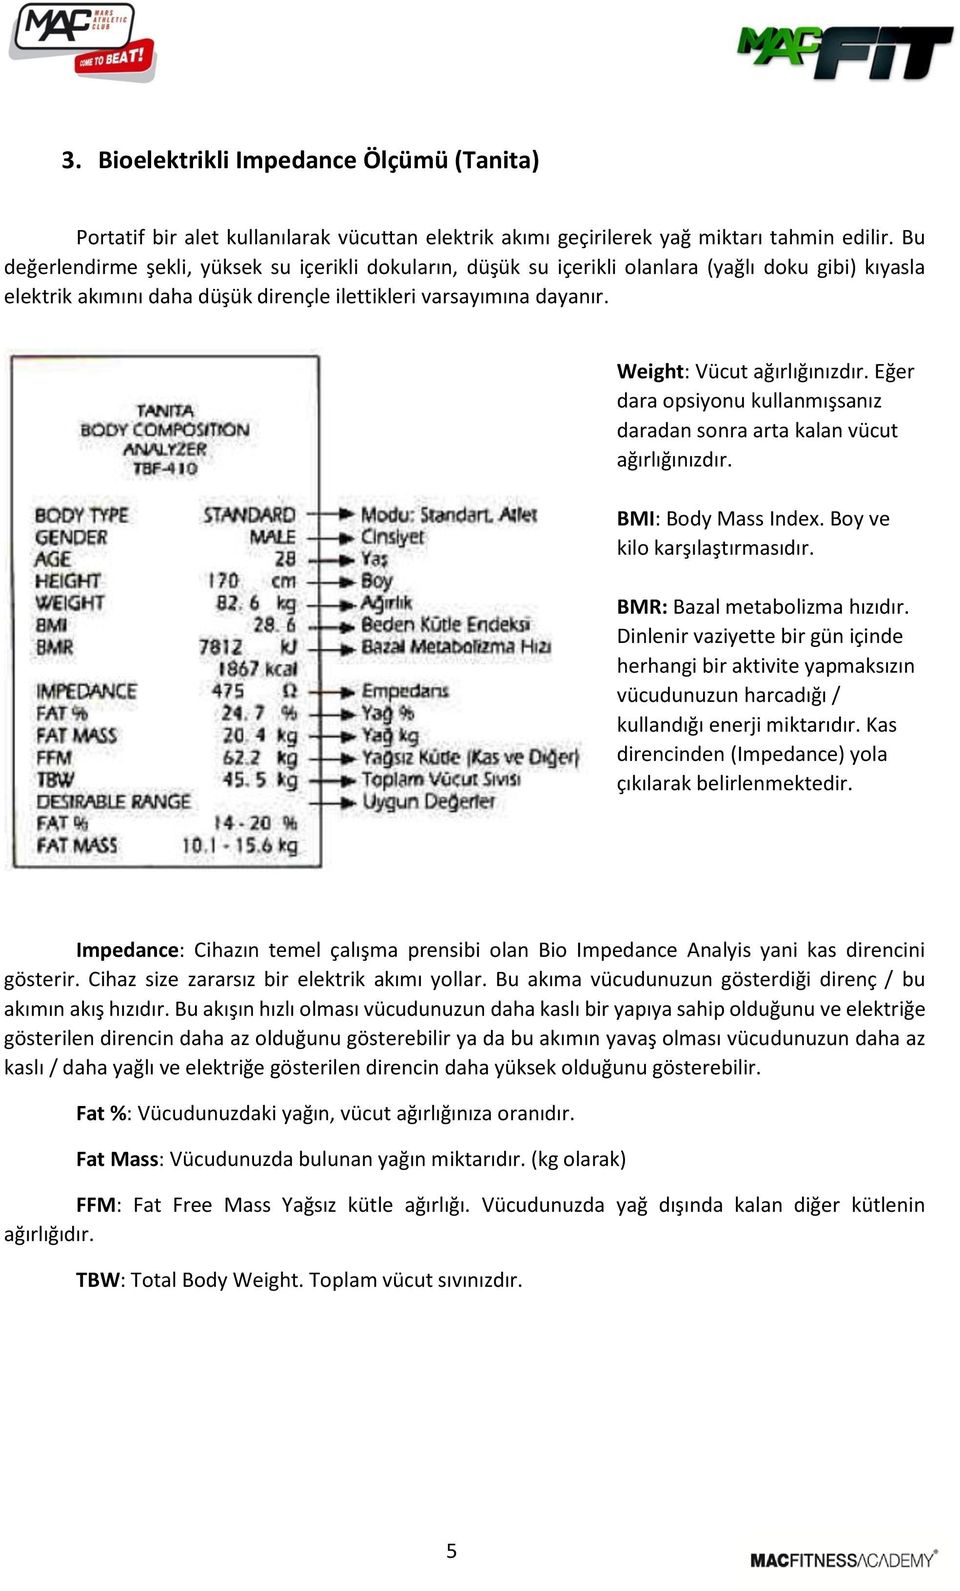 Weight: Vücut ağırlığınızdır. Eğer dara opsiyonu kullanmışsanız daradan sonra arta kalan vücut ağırlığınızdır. BMI: Body Mass Index. Boy ve kilo karşılaştırmasıdır. BMR: Bazal metabolizma hızıdır.